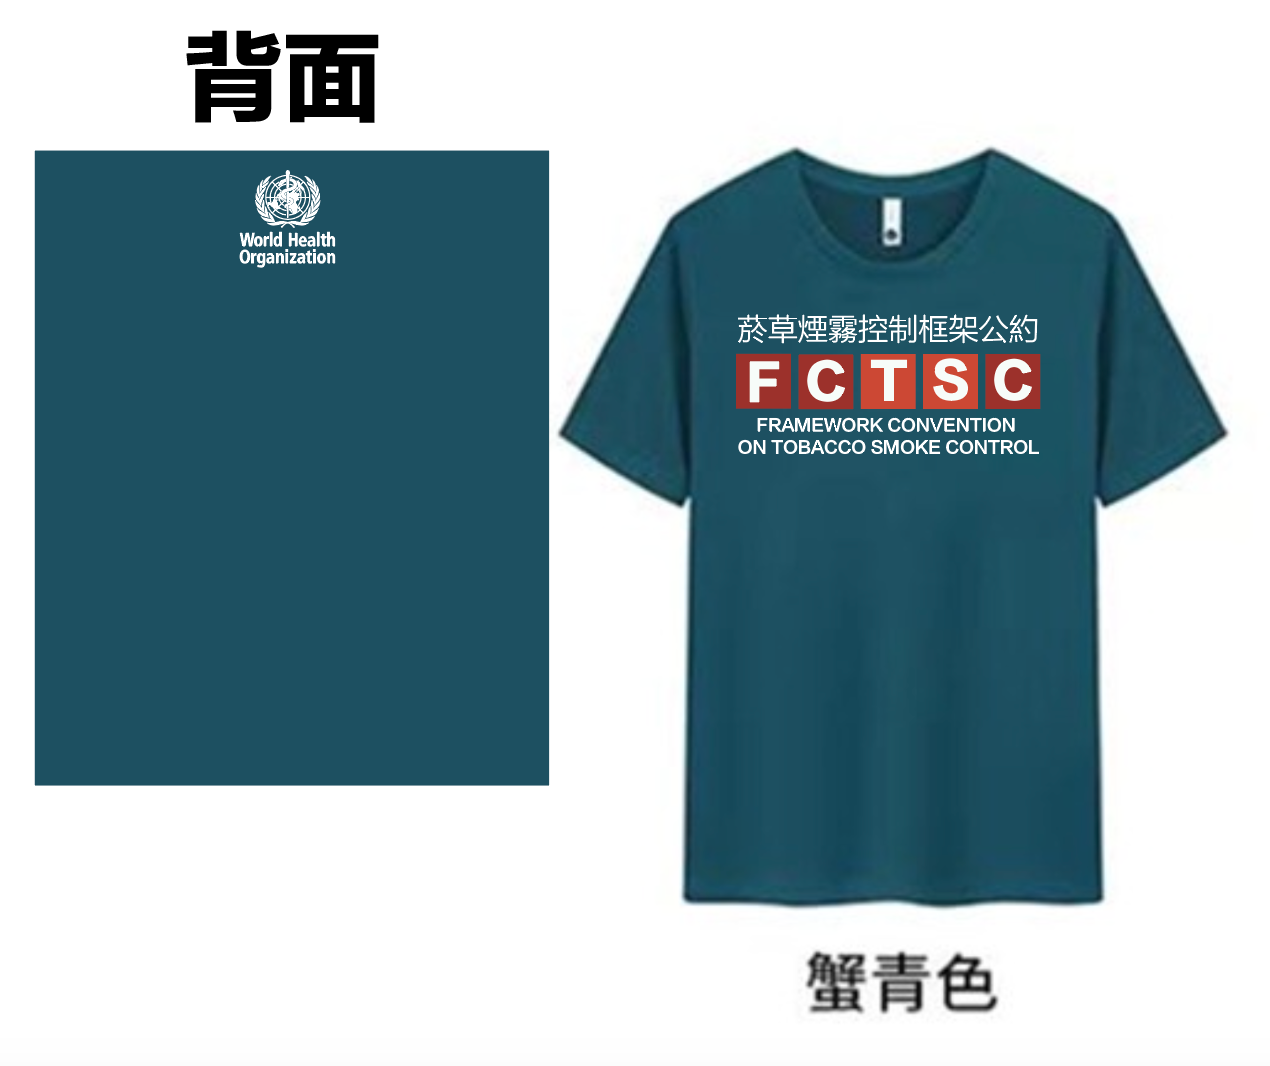 菸草煙霧控制框架公約 FCTSC 衣服